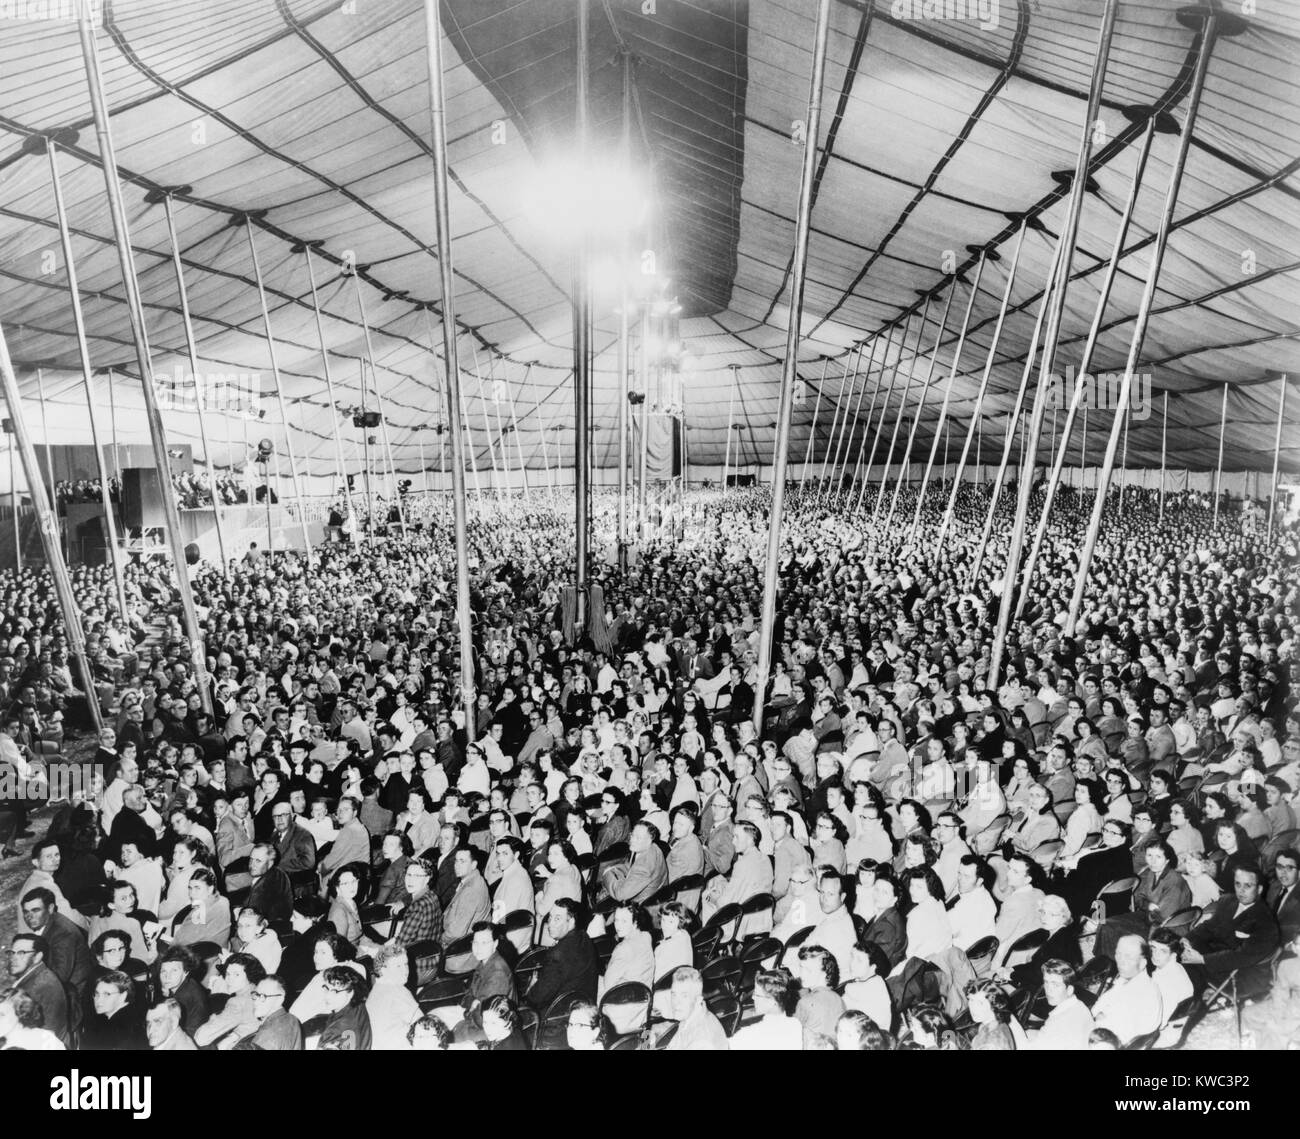 Prediger Oral Roberts durchgeführt evangelistische und Glaubensheilung Kreuzzüge in einem Zelt in 1959. Er bereiste Amerika mit seinem riesigen Zelt Kathedrale, die wuchs, bis es 12.000 Menschen statt. (BSLOC 2015 14 157) Stockfoto